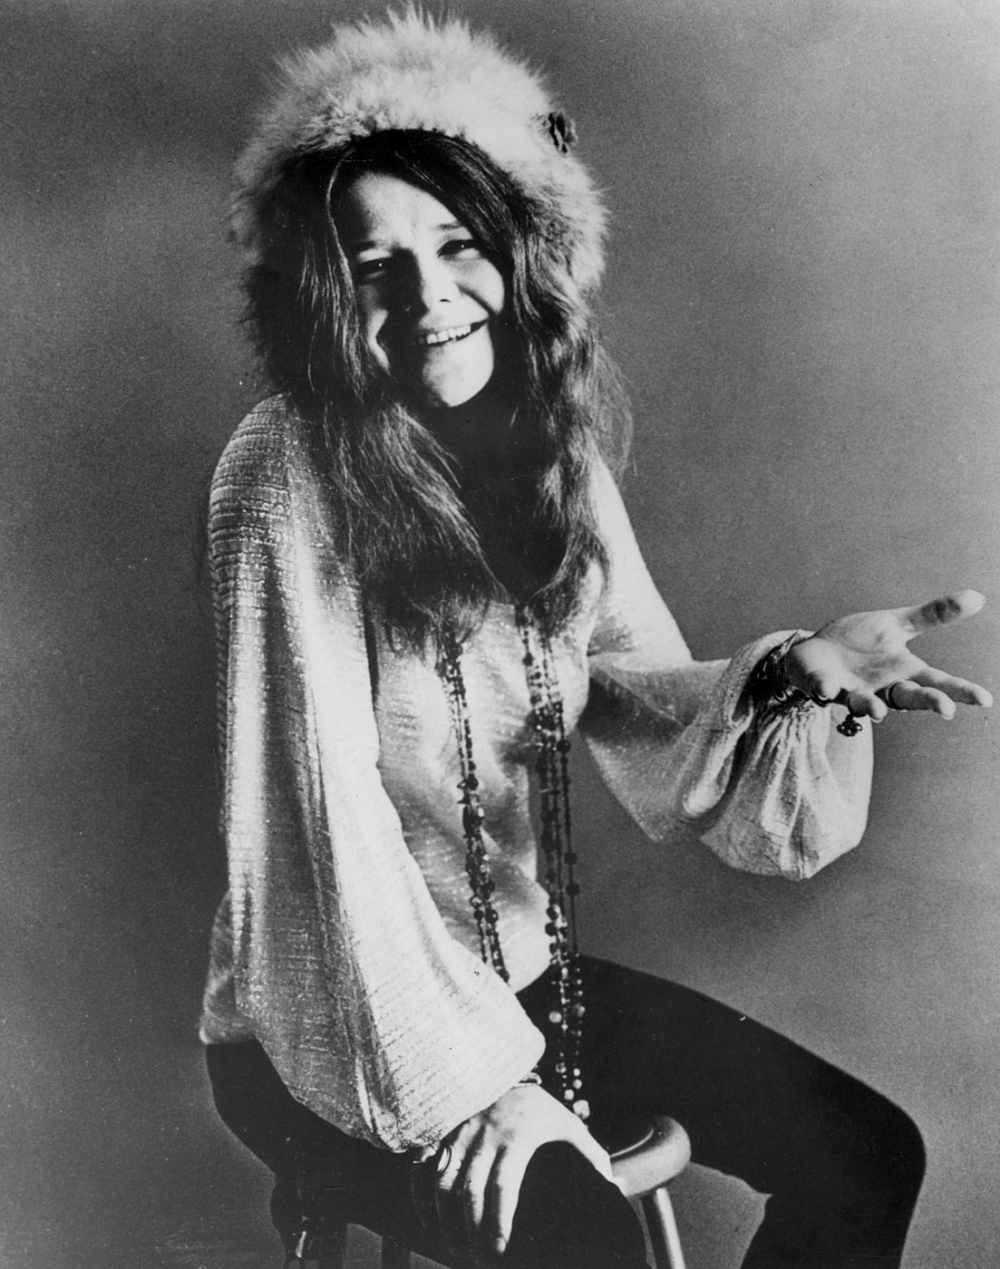 Janis Joplin in 1969